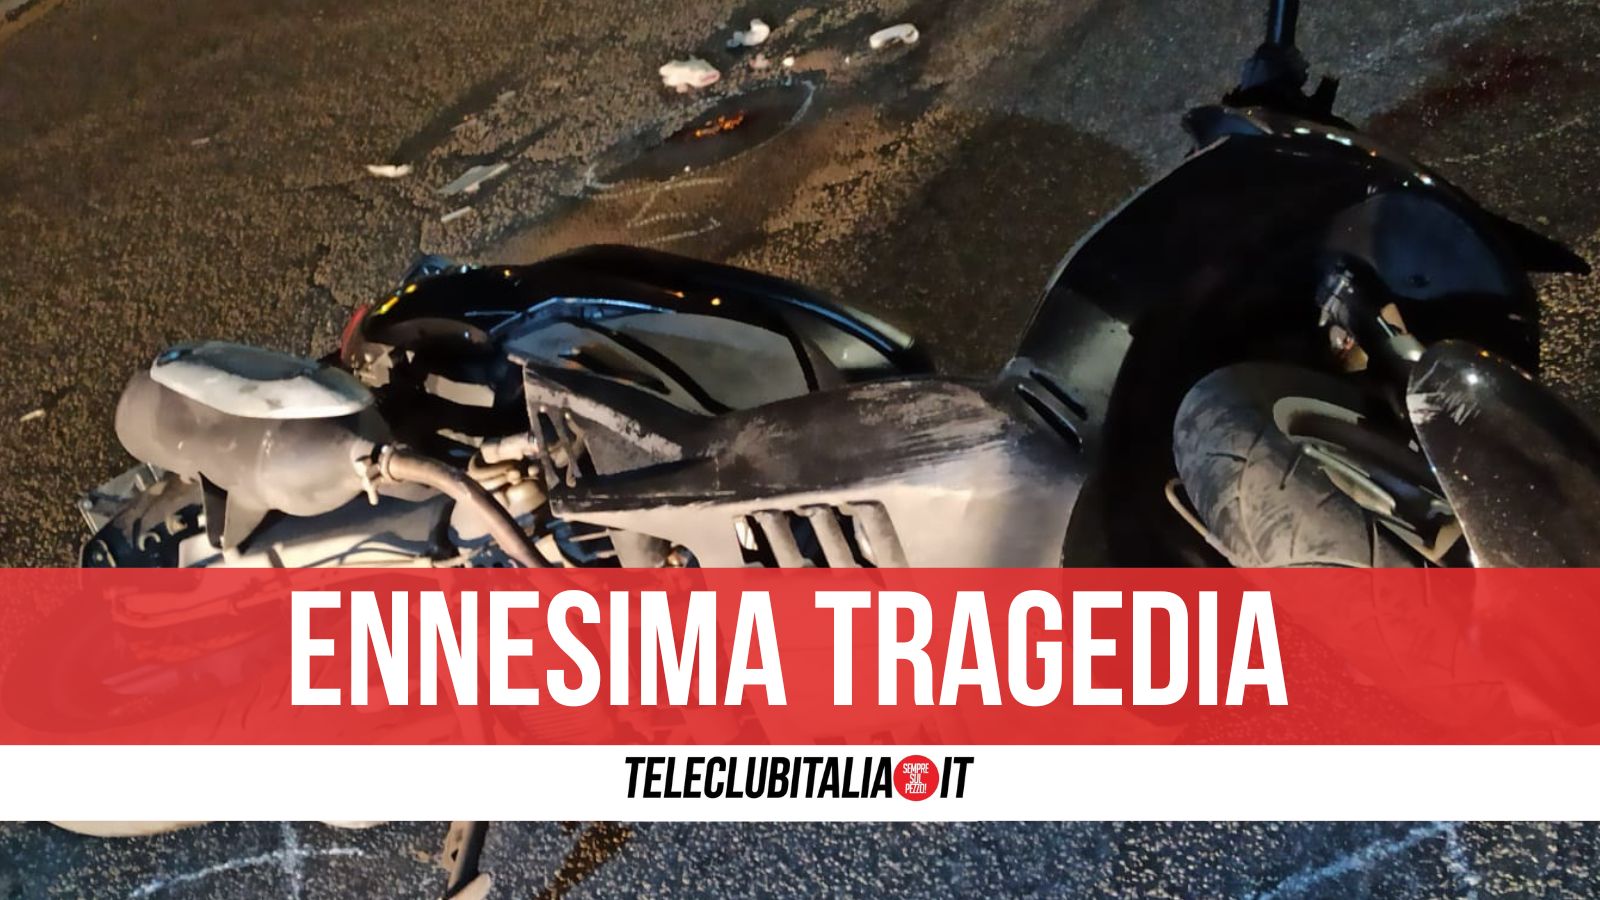 Villaricca, scontro tra scooter: morto un giovane e feriti gravemente altri due